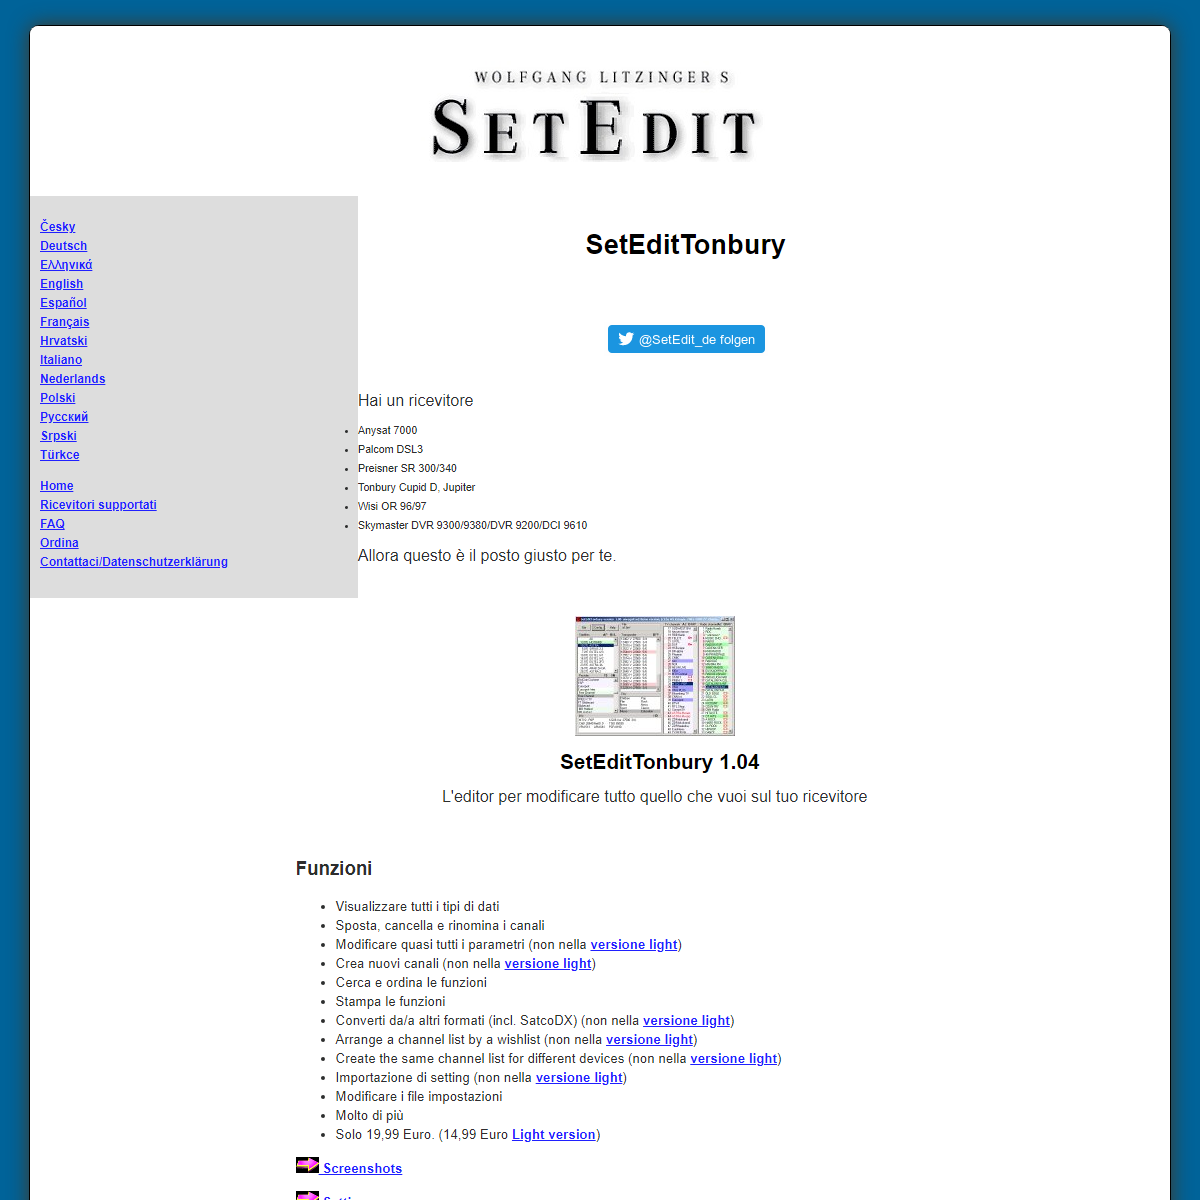 A complete backup of https://setedit.de/SetEdit.php?spr=6&Editor=33&device=Tonbury